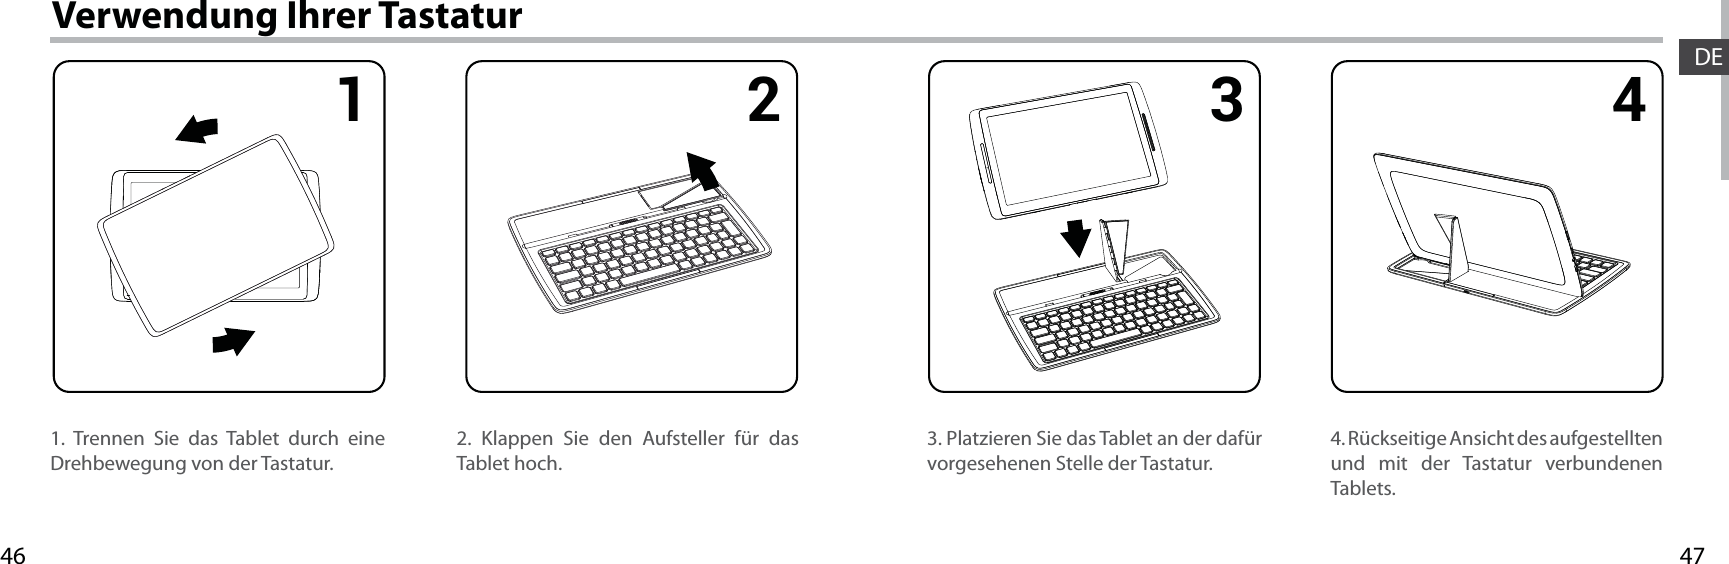 47461 2 3 4DEVerwendung Ihrer Tastatur1. Trennen Sie das Tablet durch eine Drehbewegung von der Tastatur.4. Rückseitige Ansicht des aufgestellten und mit der Tastatur verbundenen Tablets.3. Platzieren Sie das Tablet an der dafür vorgesehenen Stelle der Tastatur.2. Klappen Sie den Aufsteller für das Tablet hoch.